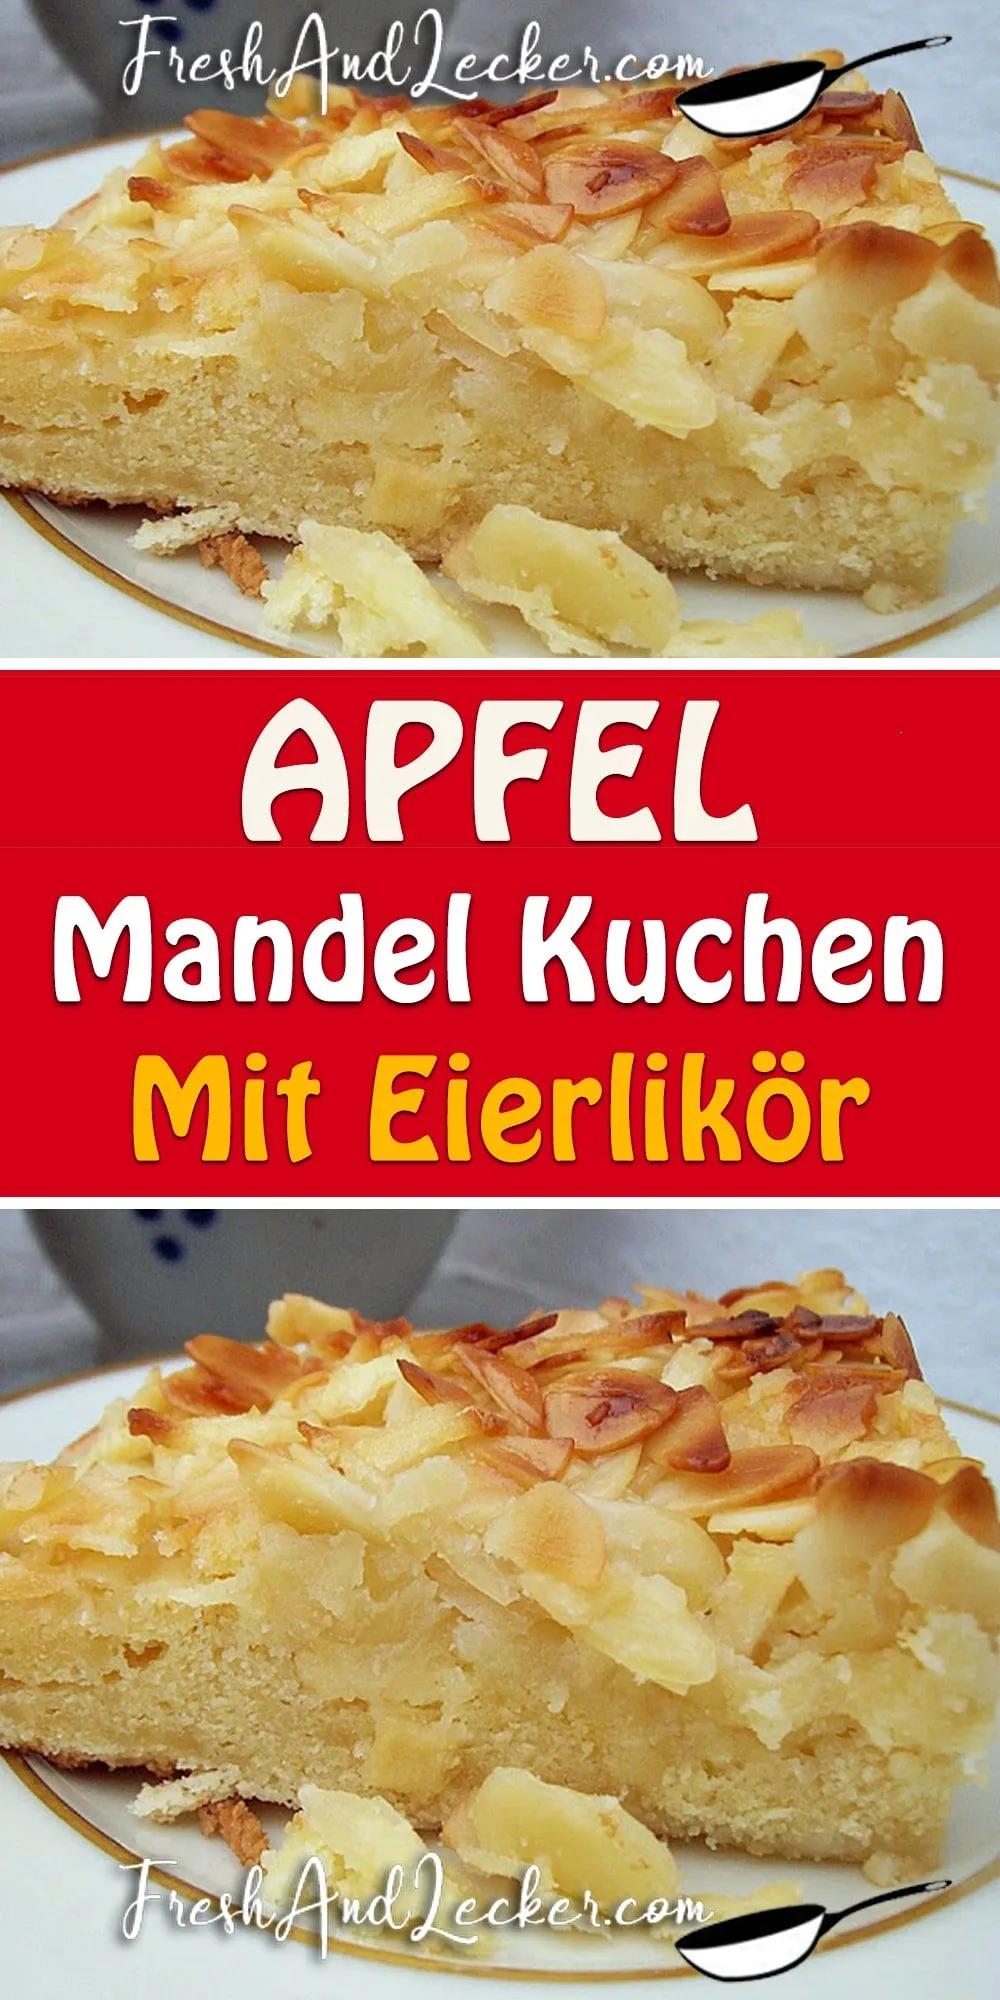 Apfel Mandel Kuchen mit Eierlikör | Apfelkuchen rezept lecker ...